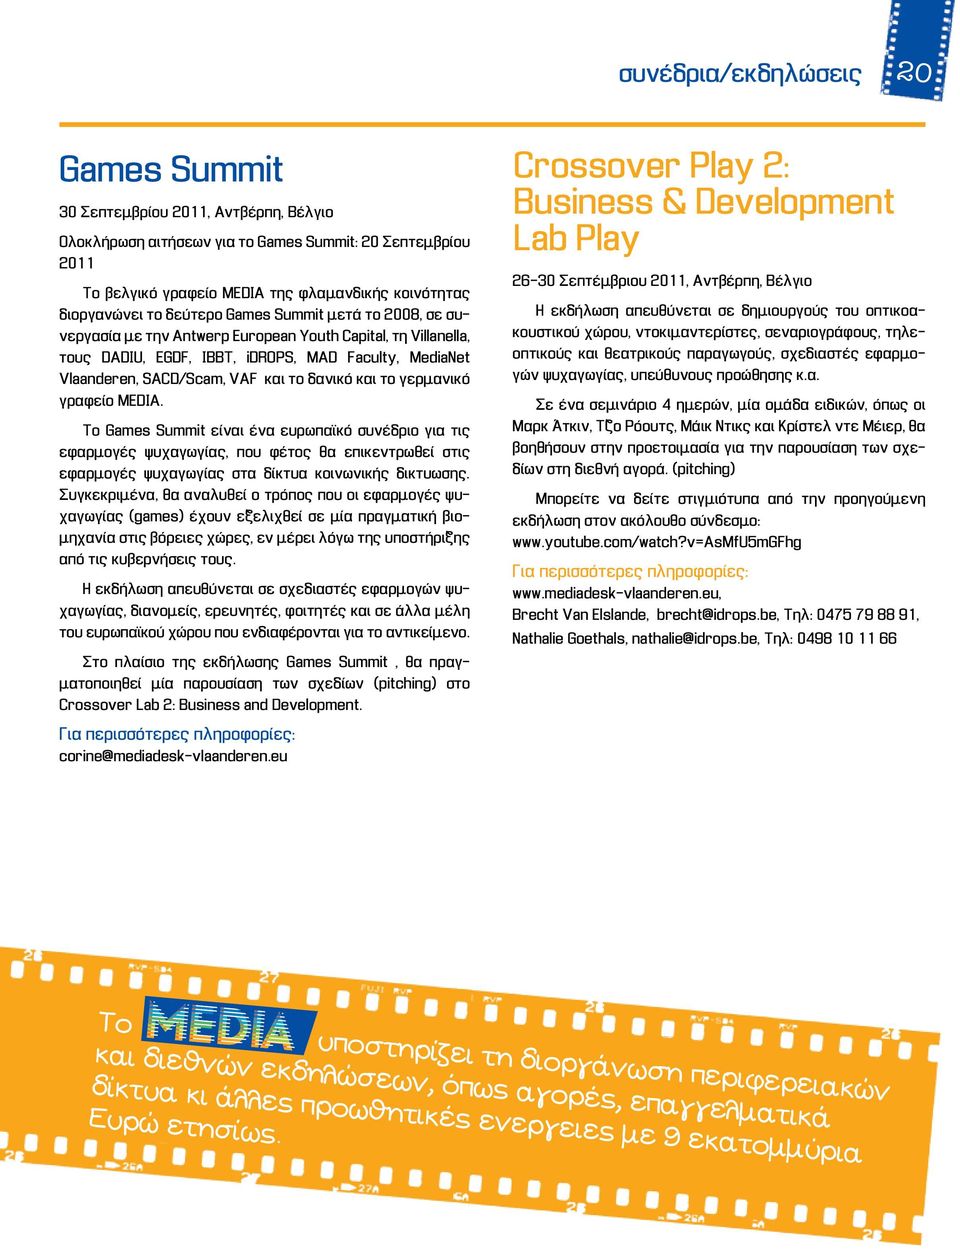 δανικό και το γερμανικό γραφείο MEDIA. Το Games Summit είναι ένα ευρωπαϊκό συνέδριο για τις εφαρμογές ψυχαγωγίας, που φέτος θα επικεντρωθεί στις εφαρμογές ψυχαγωγίας στα δίκτυα κοινωνικής δικτυωσης.